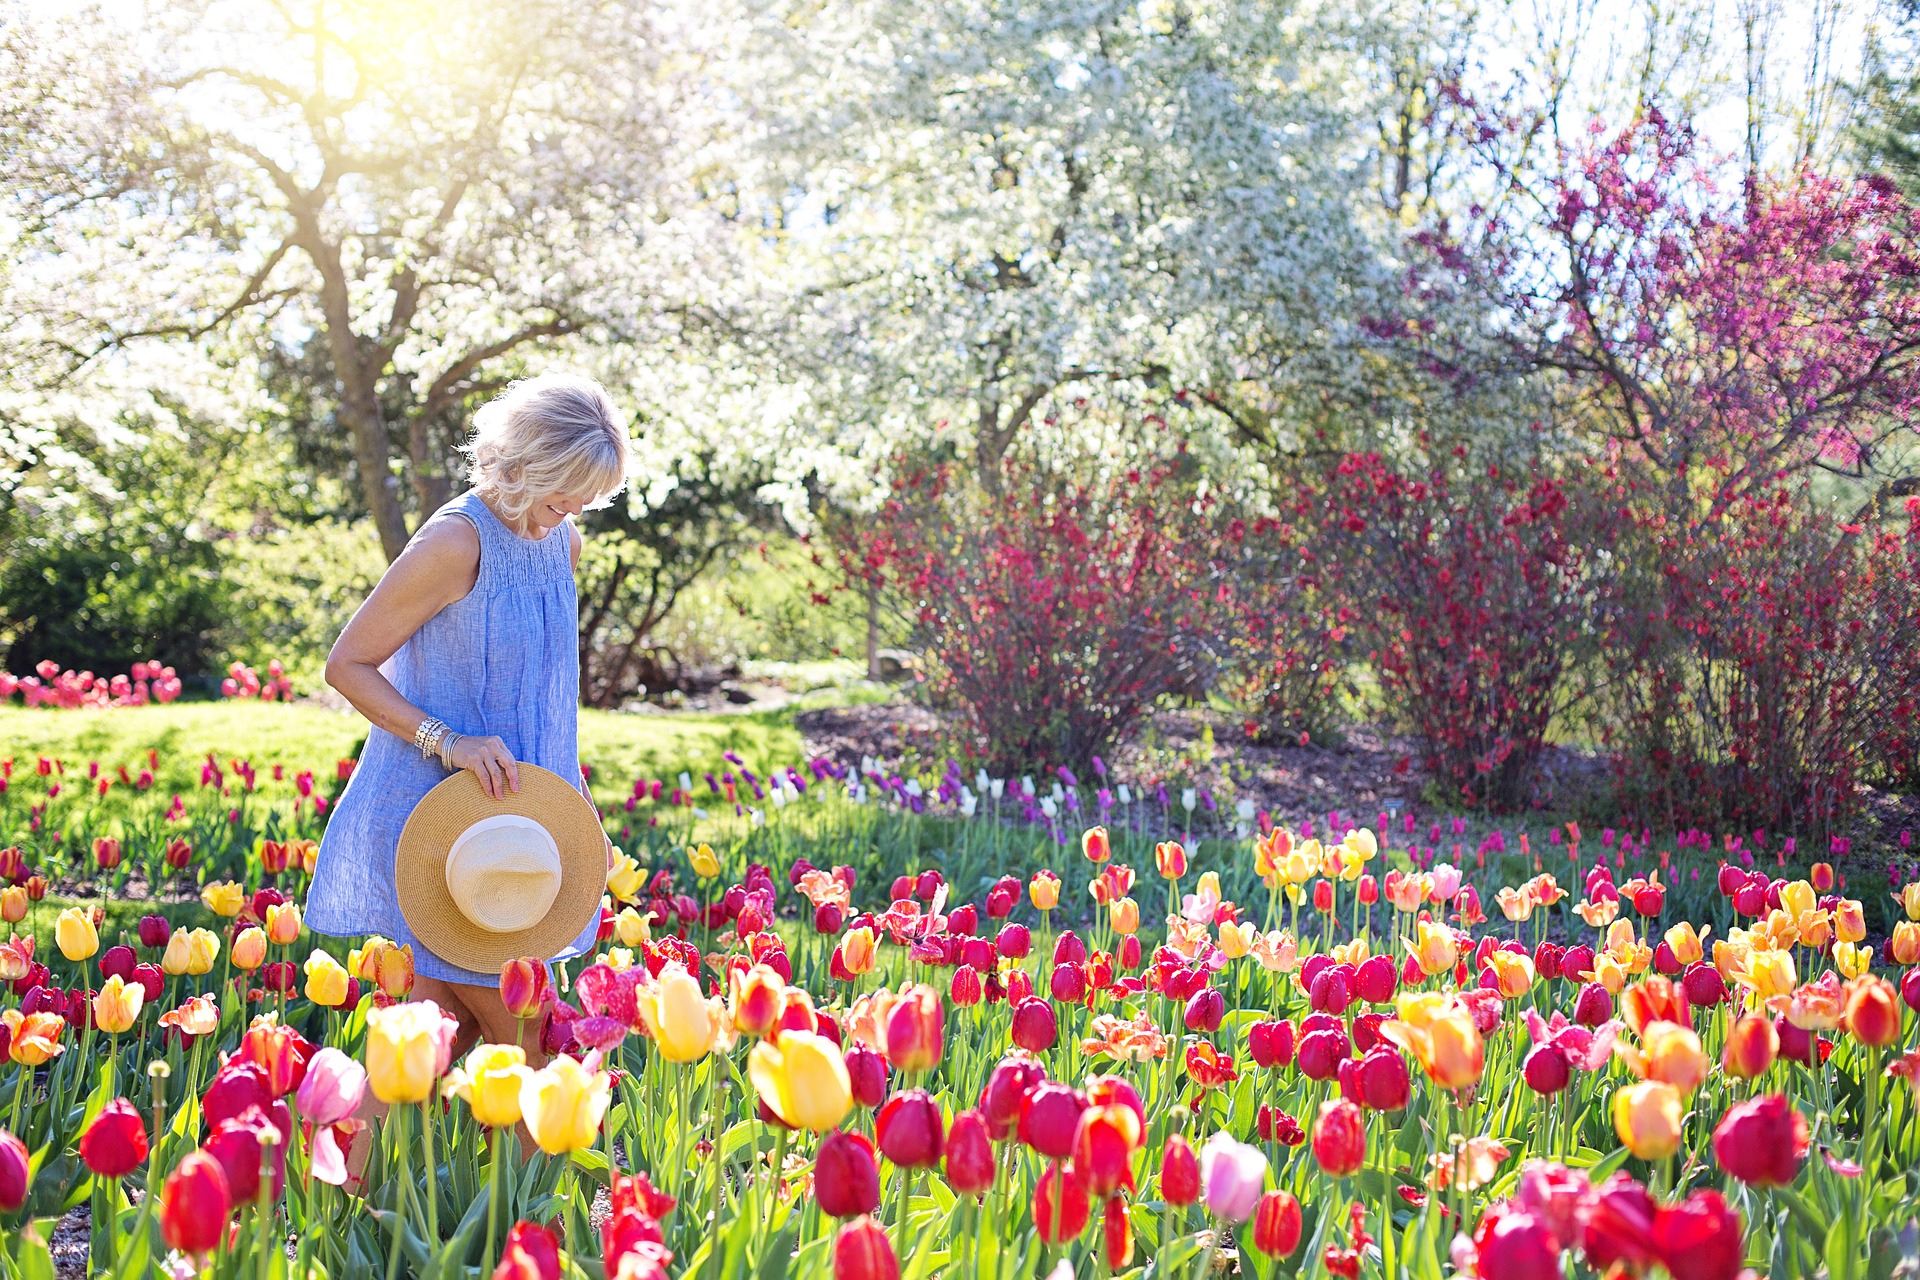 Risveglio di primavera: gli effetti sul corpo e sulla mente